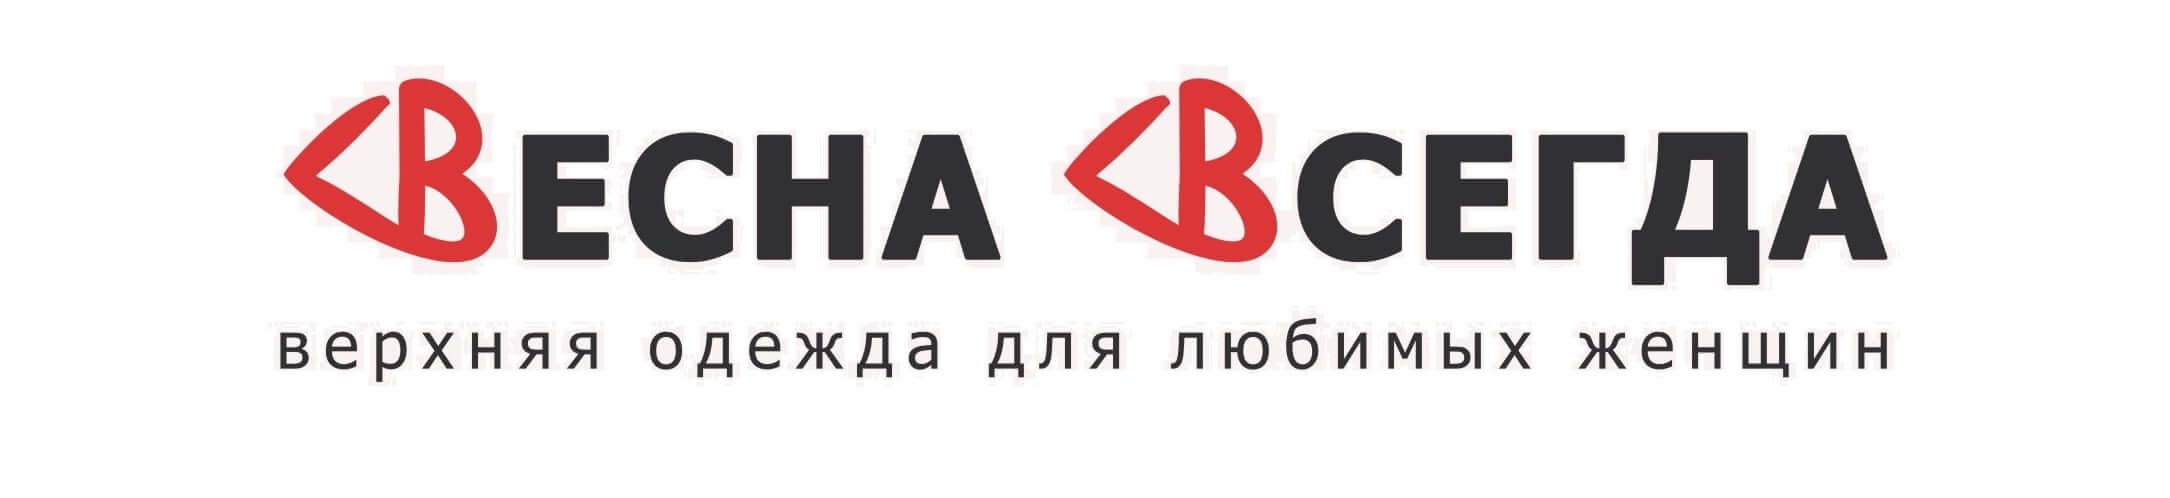 Logotip Vesna Vsegda